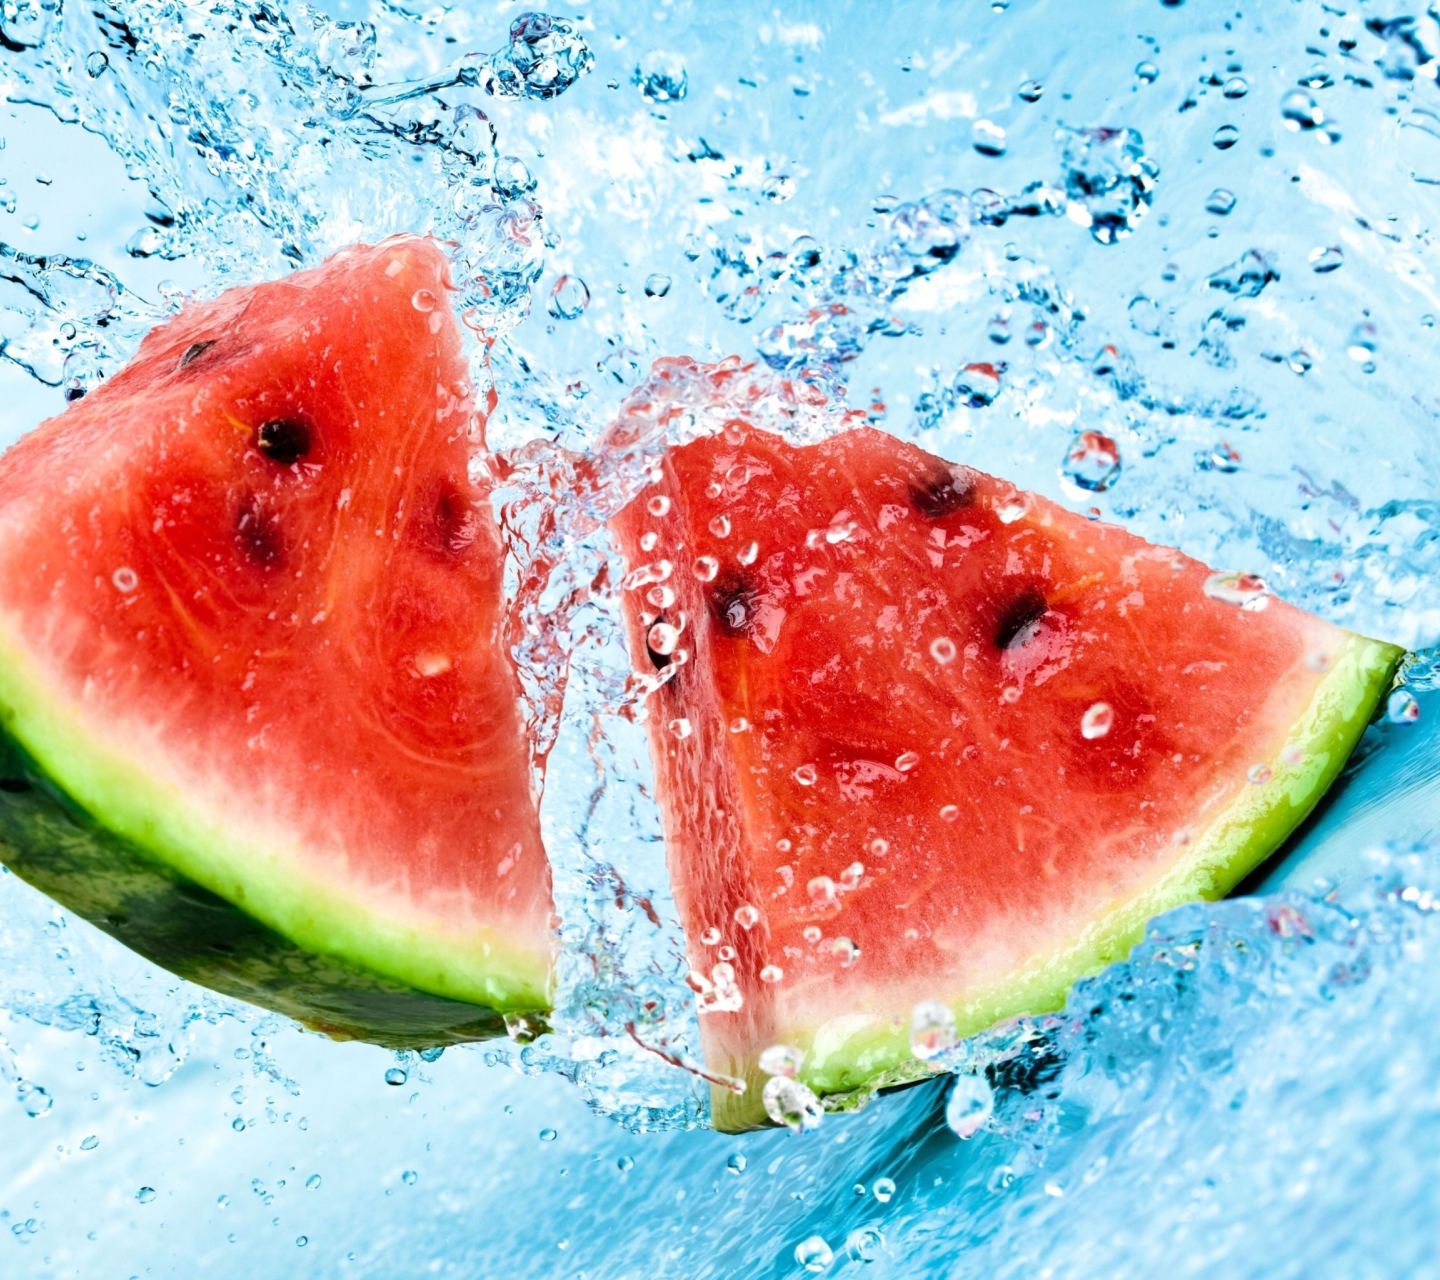 Обои Watermelon In Water 1440x1280